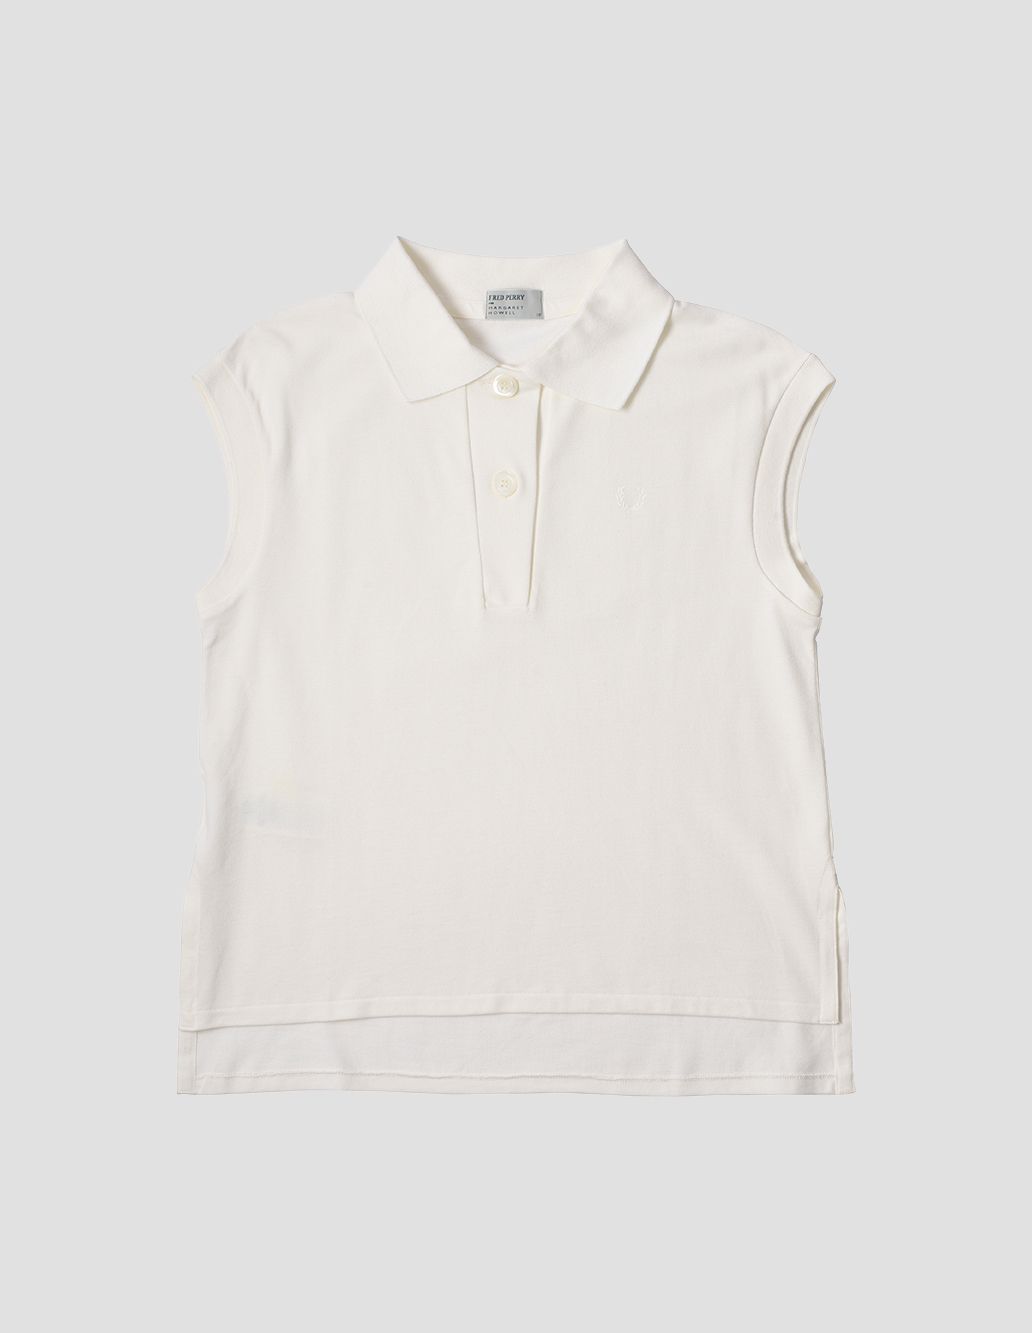 white sleeveless polo shirt for ladies